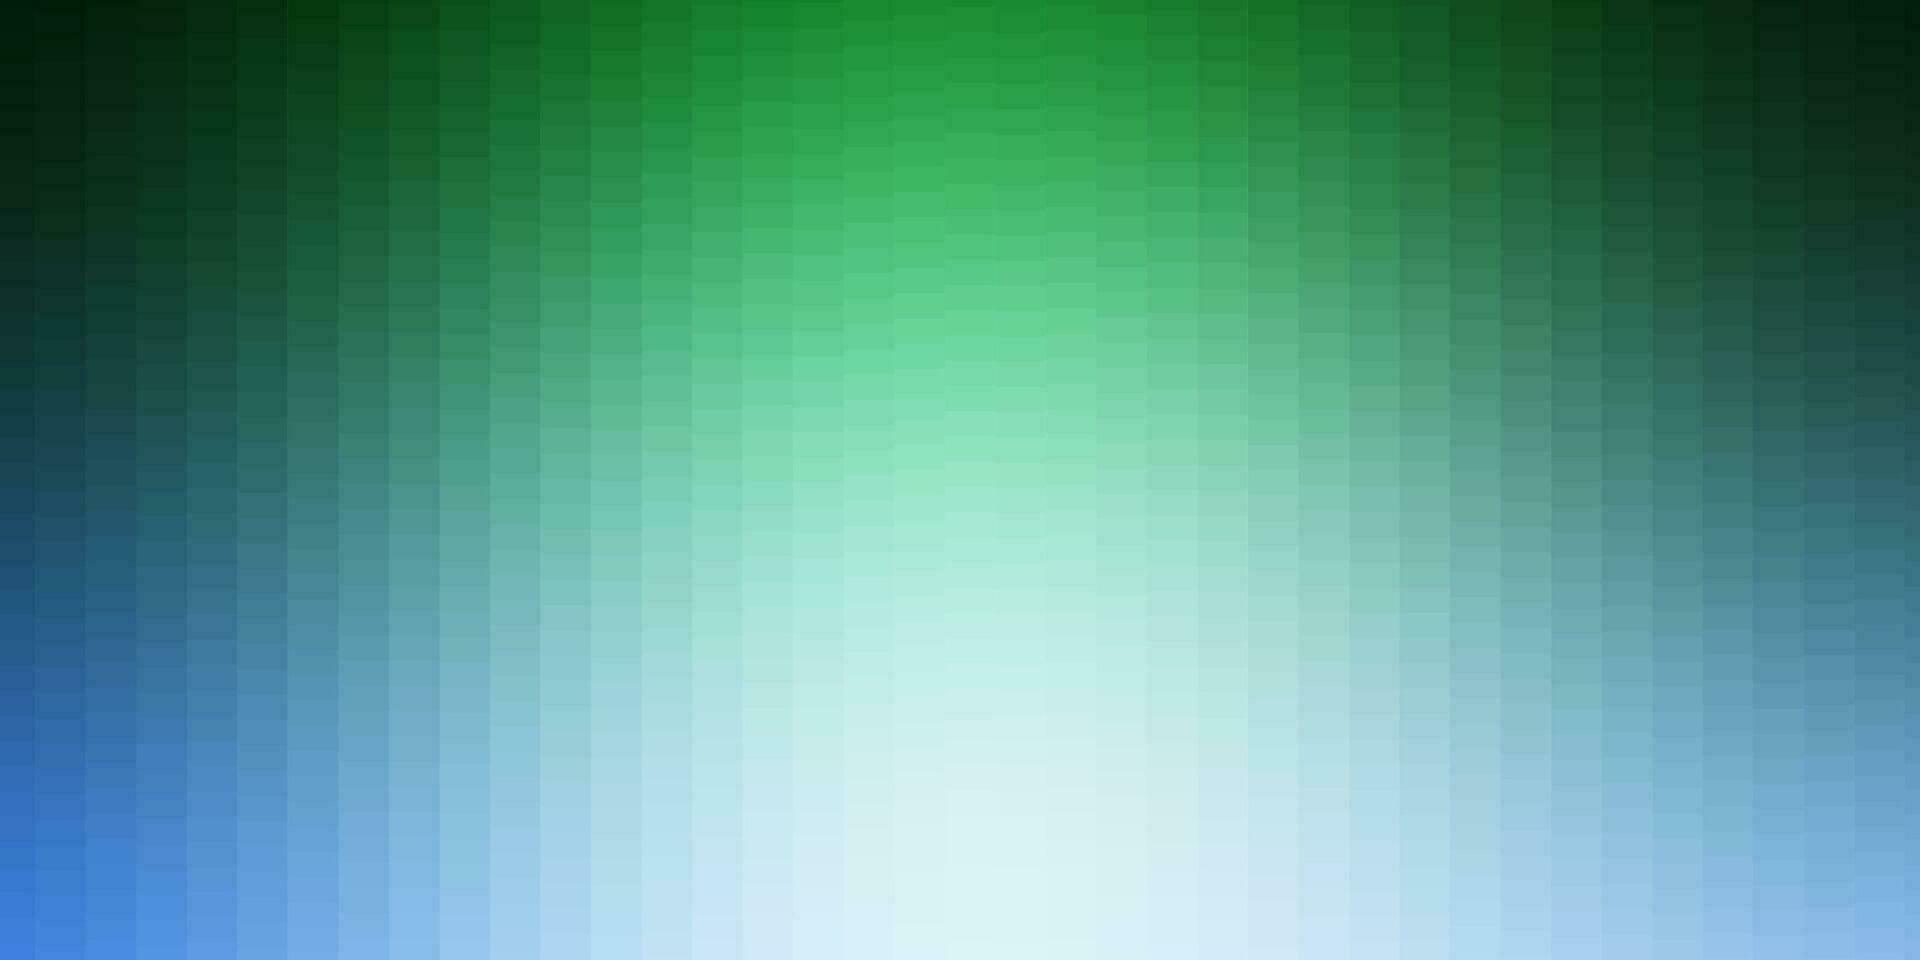 toile de fond de vecteur bleu clair et vert avec des rectangles.